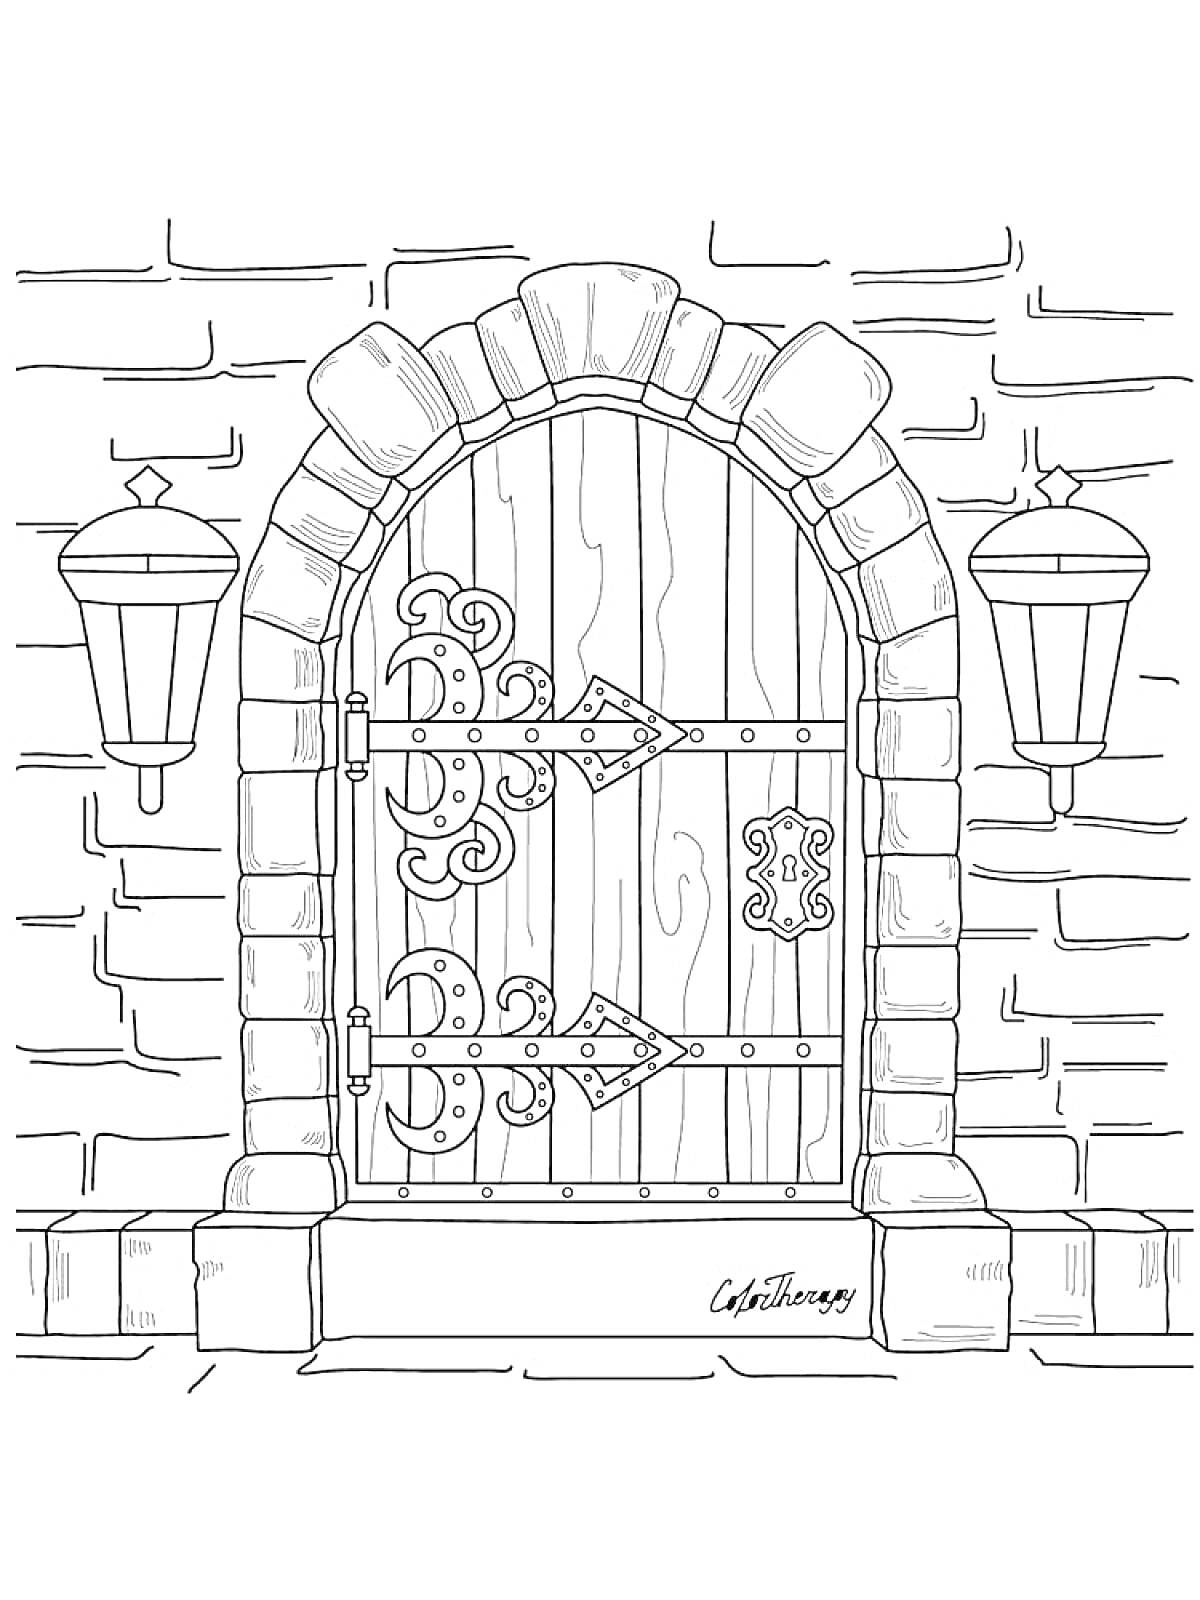 Деревянная арочная дверь с металлическими декоративными петлями, фонарями и кирпичной кладкой